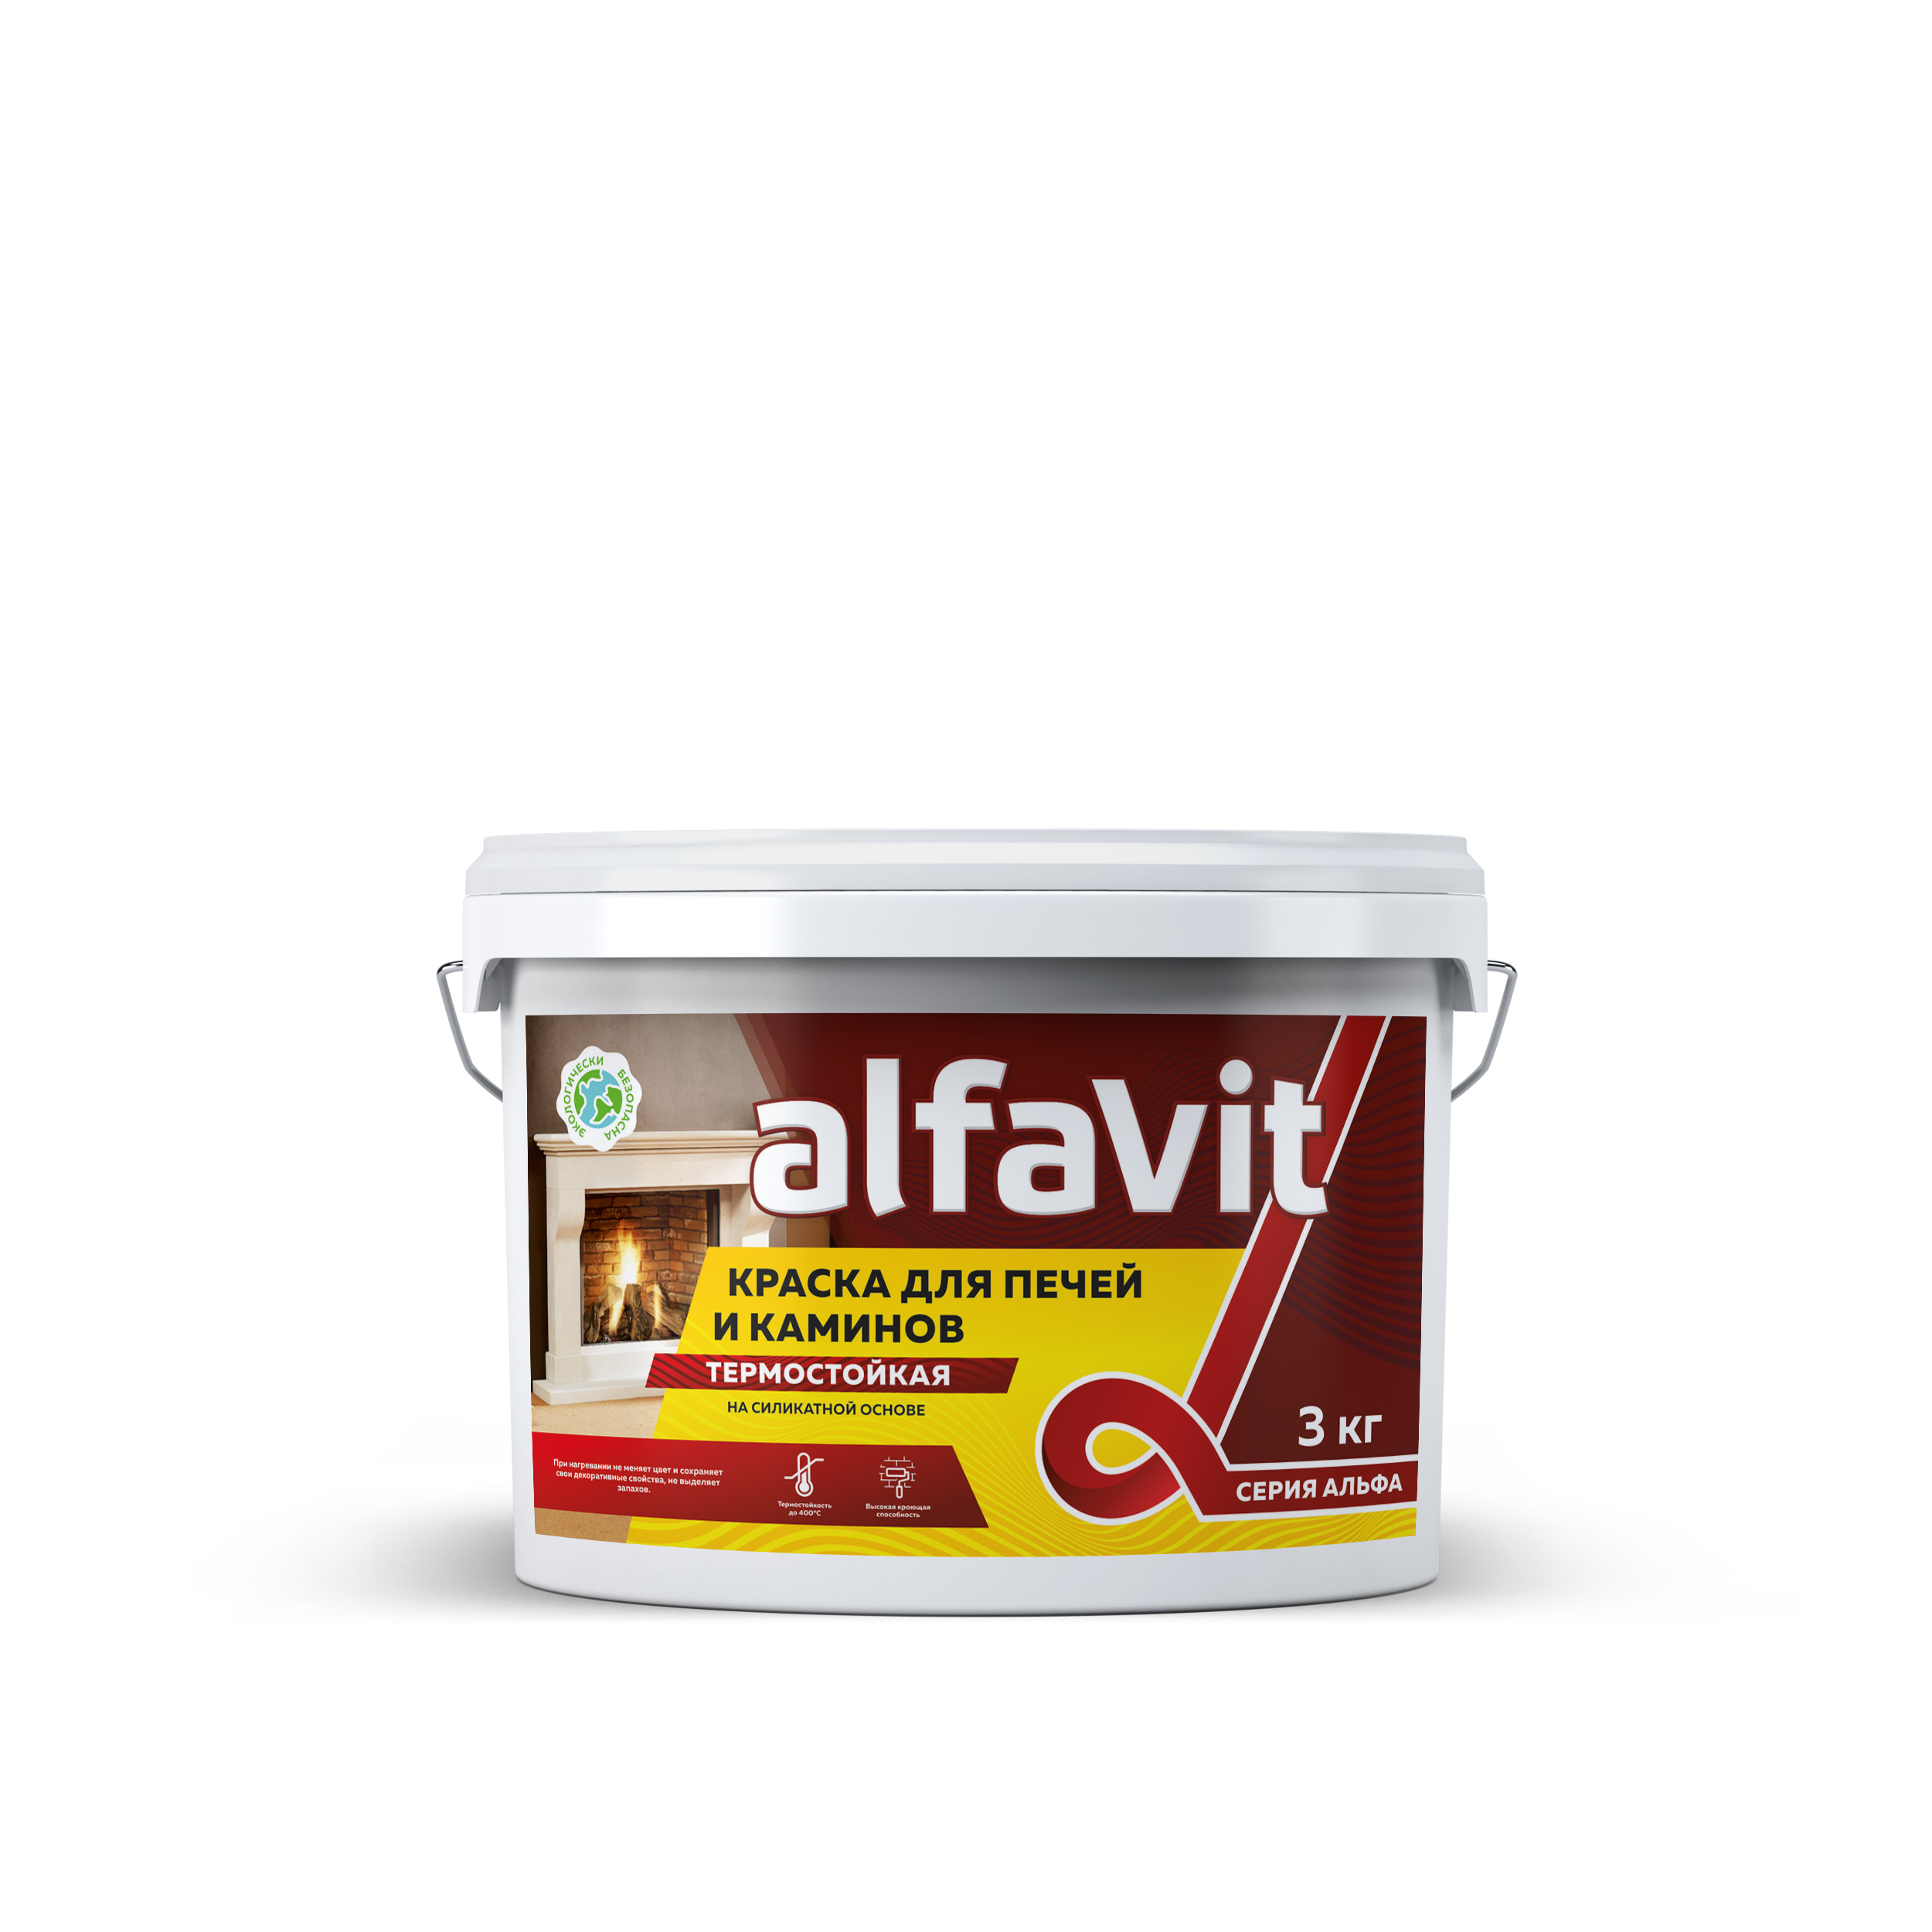 Краска для печей и каминов термостойкая Alfavit серия Альфа, красно-коричневая, 1,3 кг краска для печей и каминов резолюкс